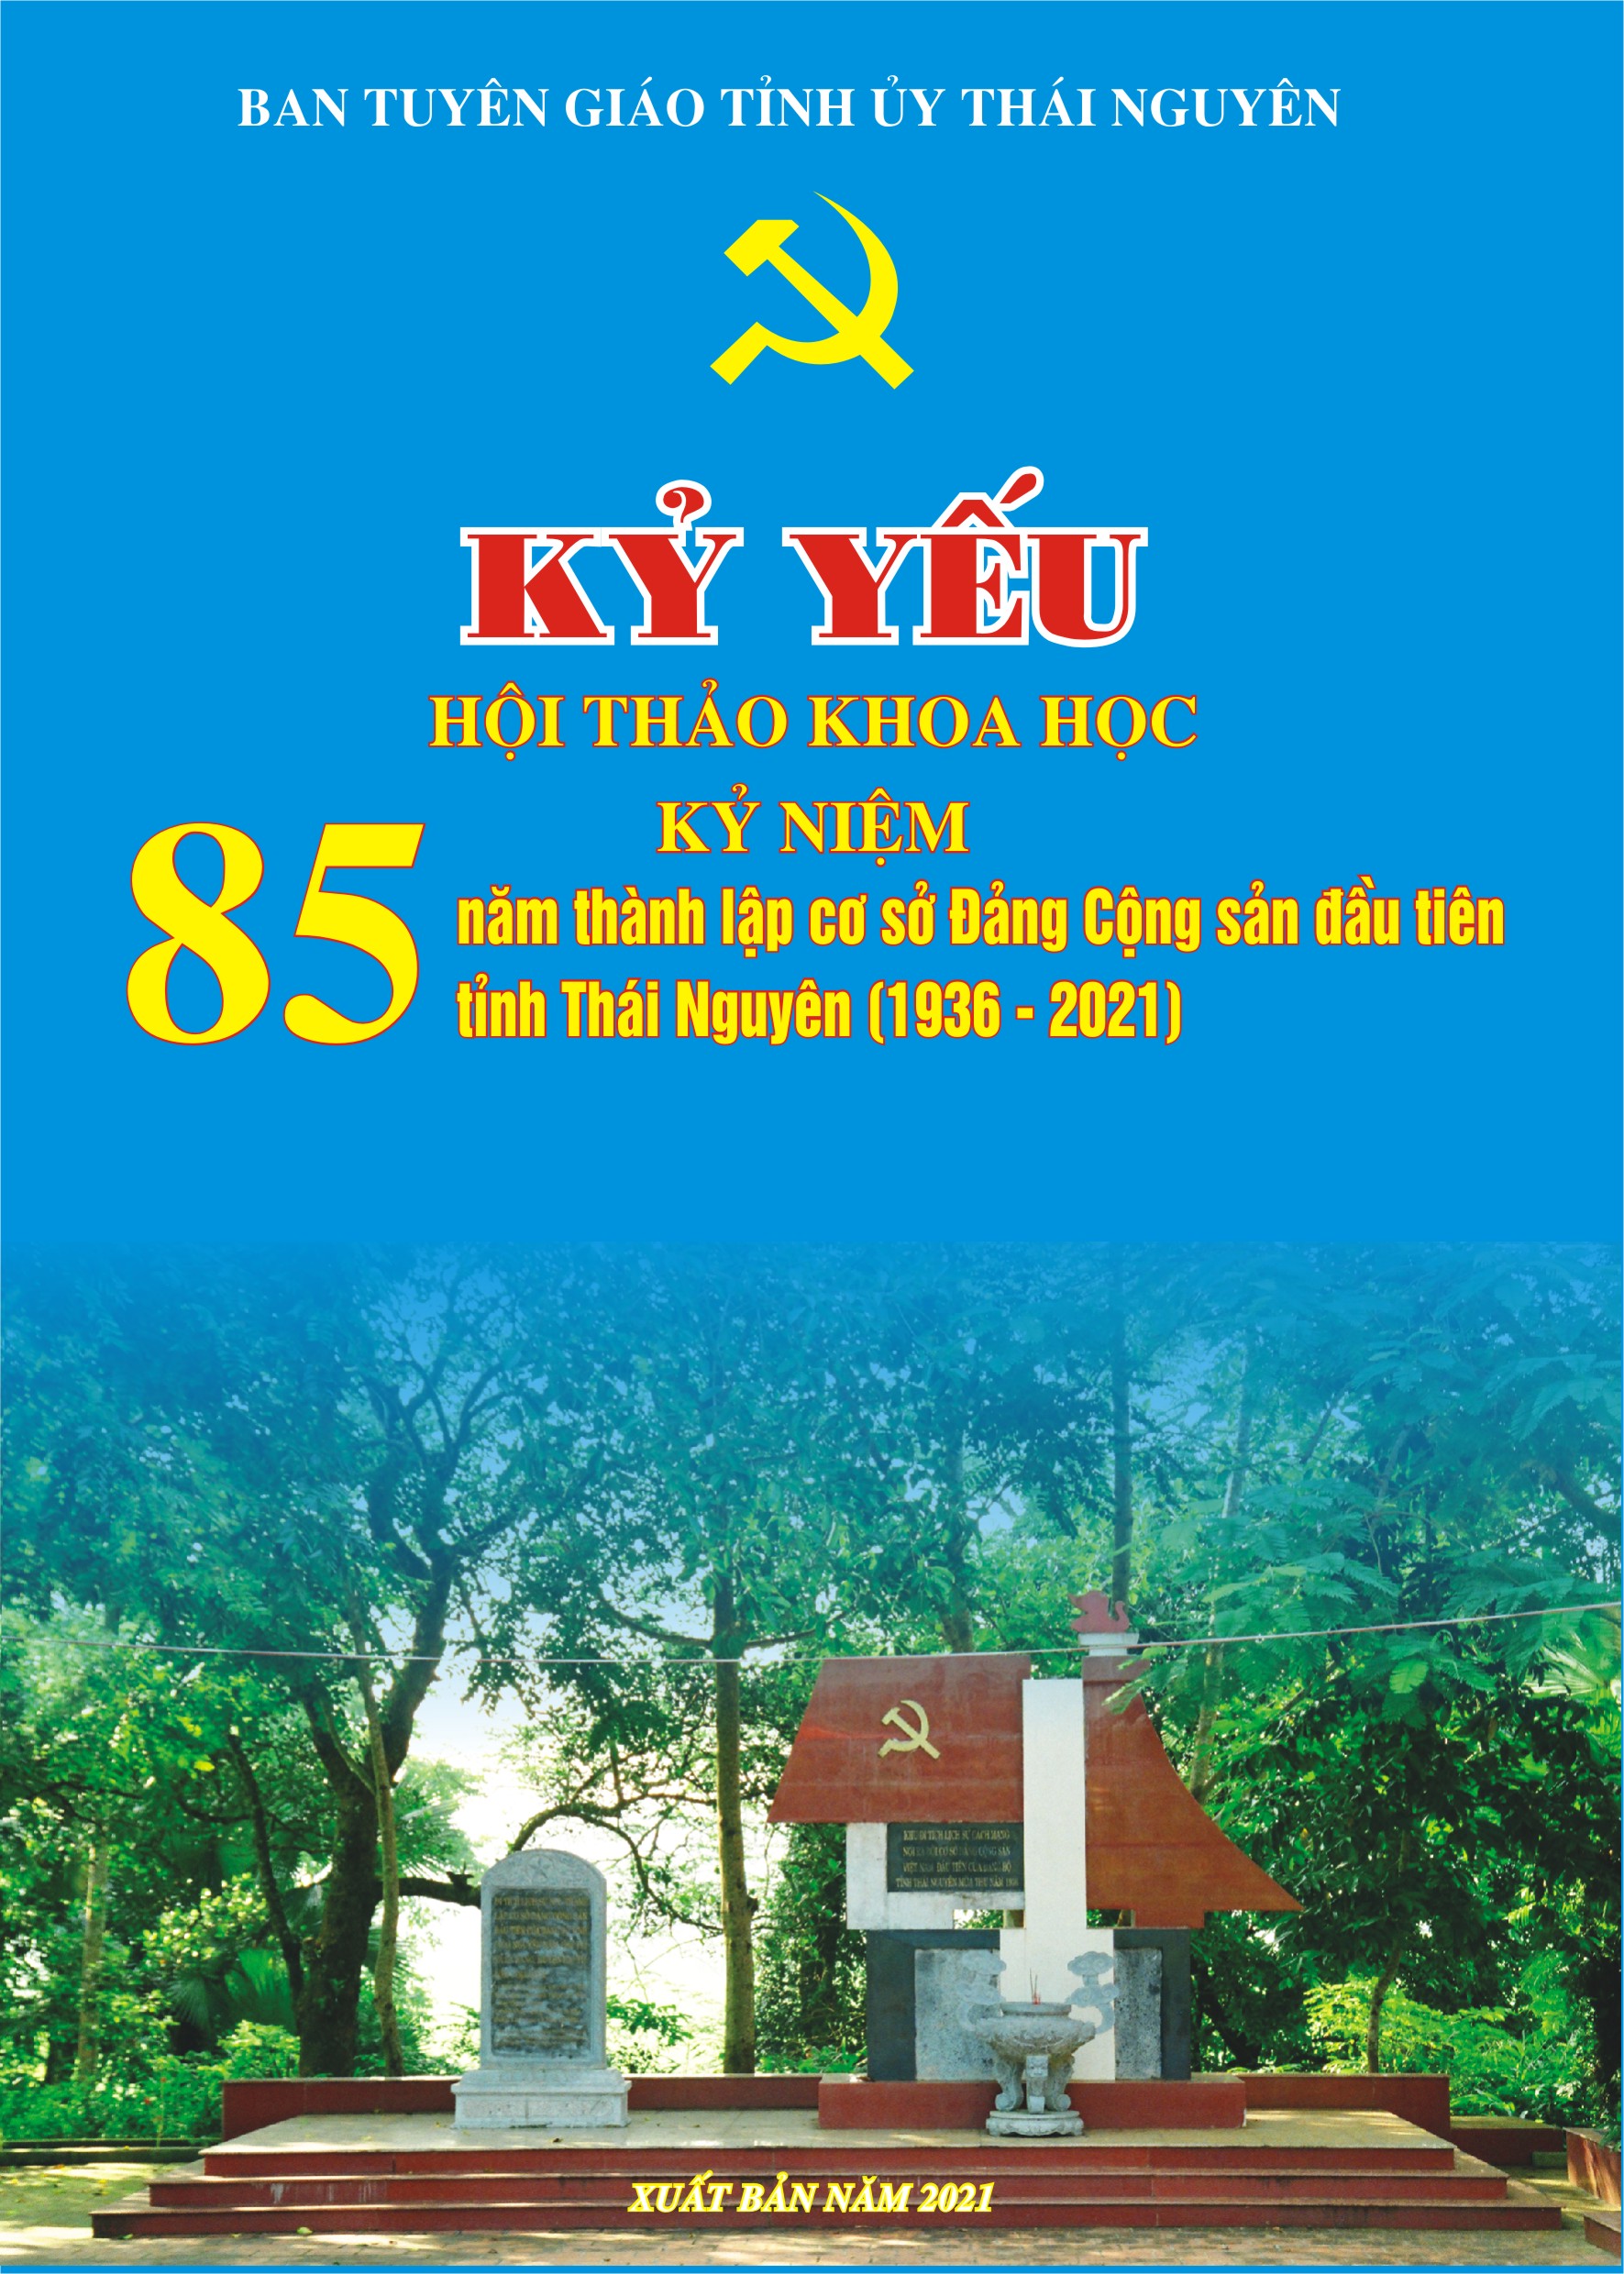 Kỷ yếu Hội thảo khoa học kỷ niệm 85 năm thành lập cơ sở Đảng Cộng sản đầu tiên tỉnh Thái Nguyên (1936 - 2021) 